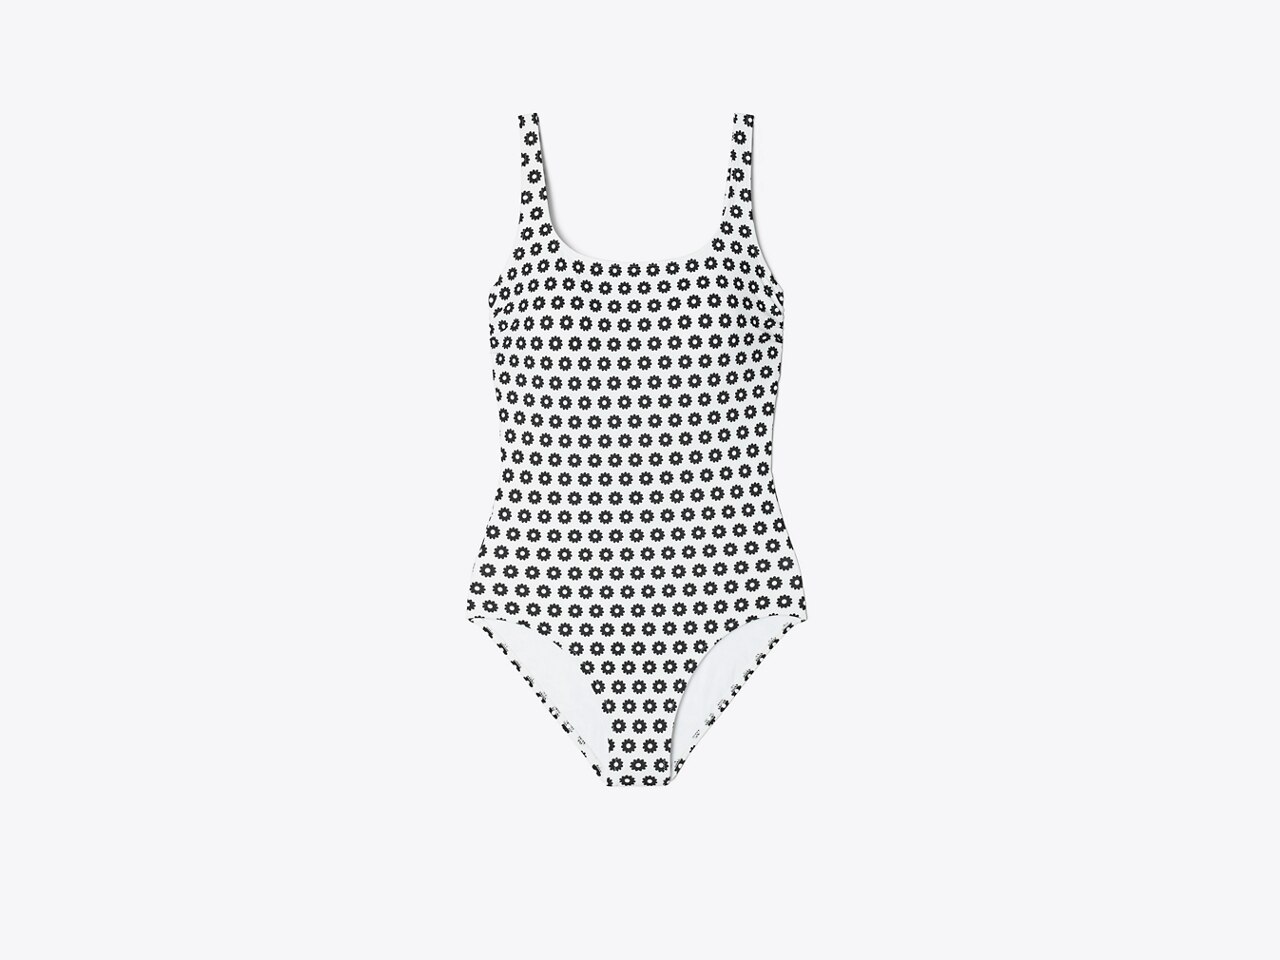 Louis Vuitton Monogram Jacquard One-Piece Swimsuit